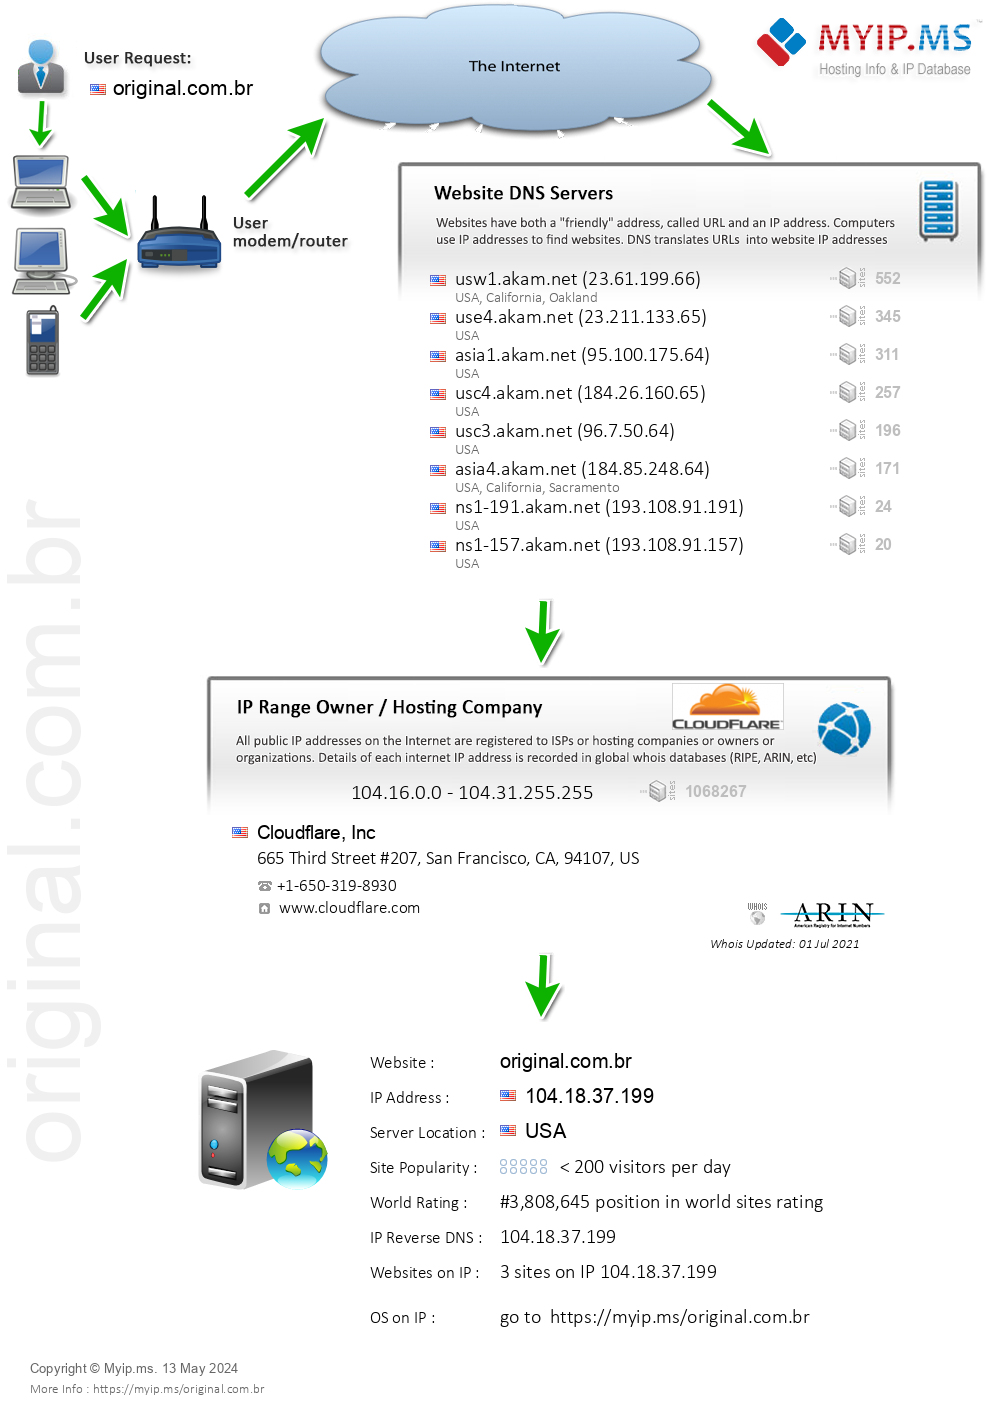 Original.com.br - Website Hosting Visual IP Diagram